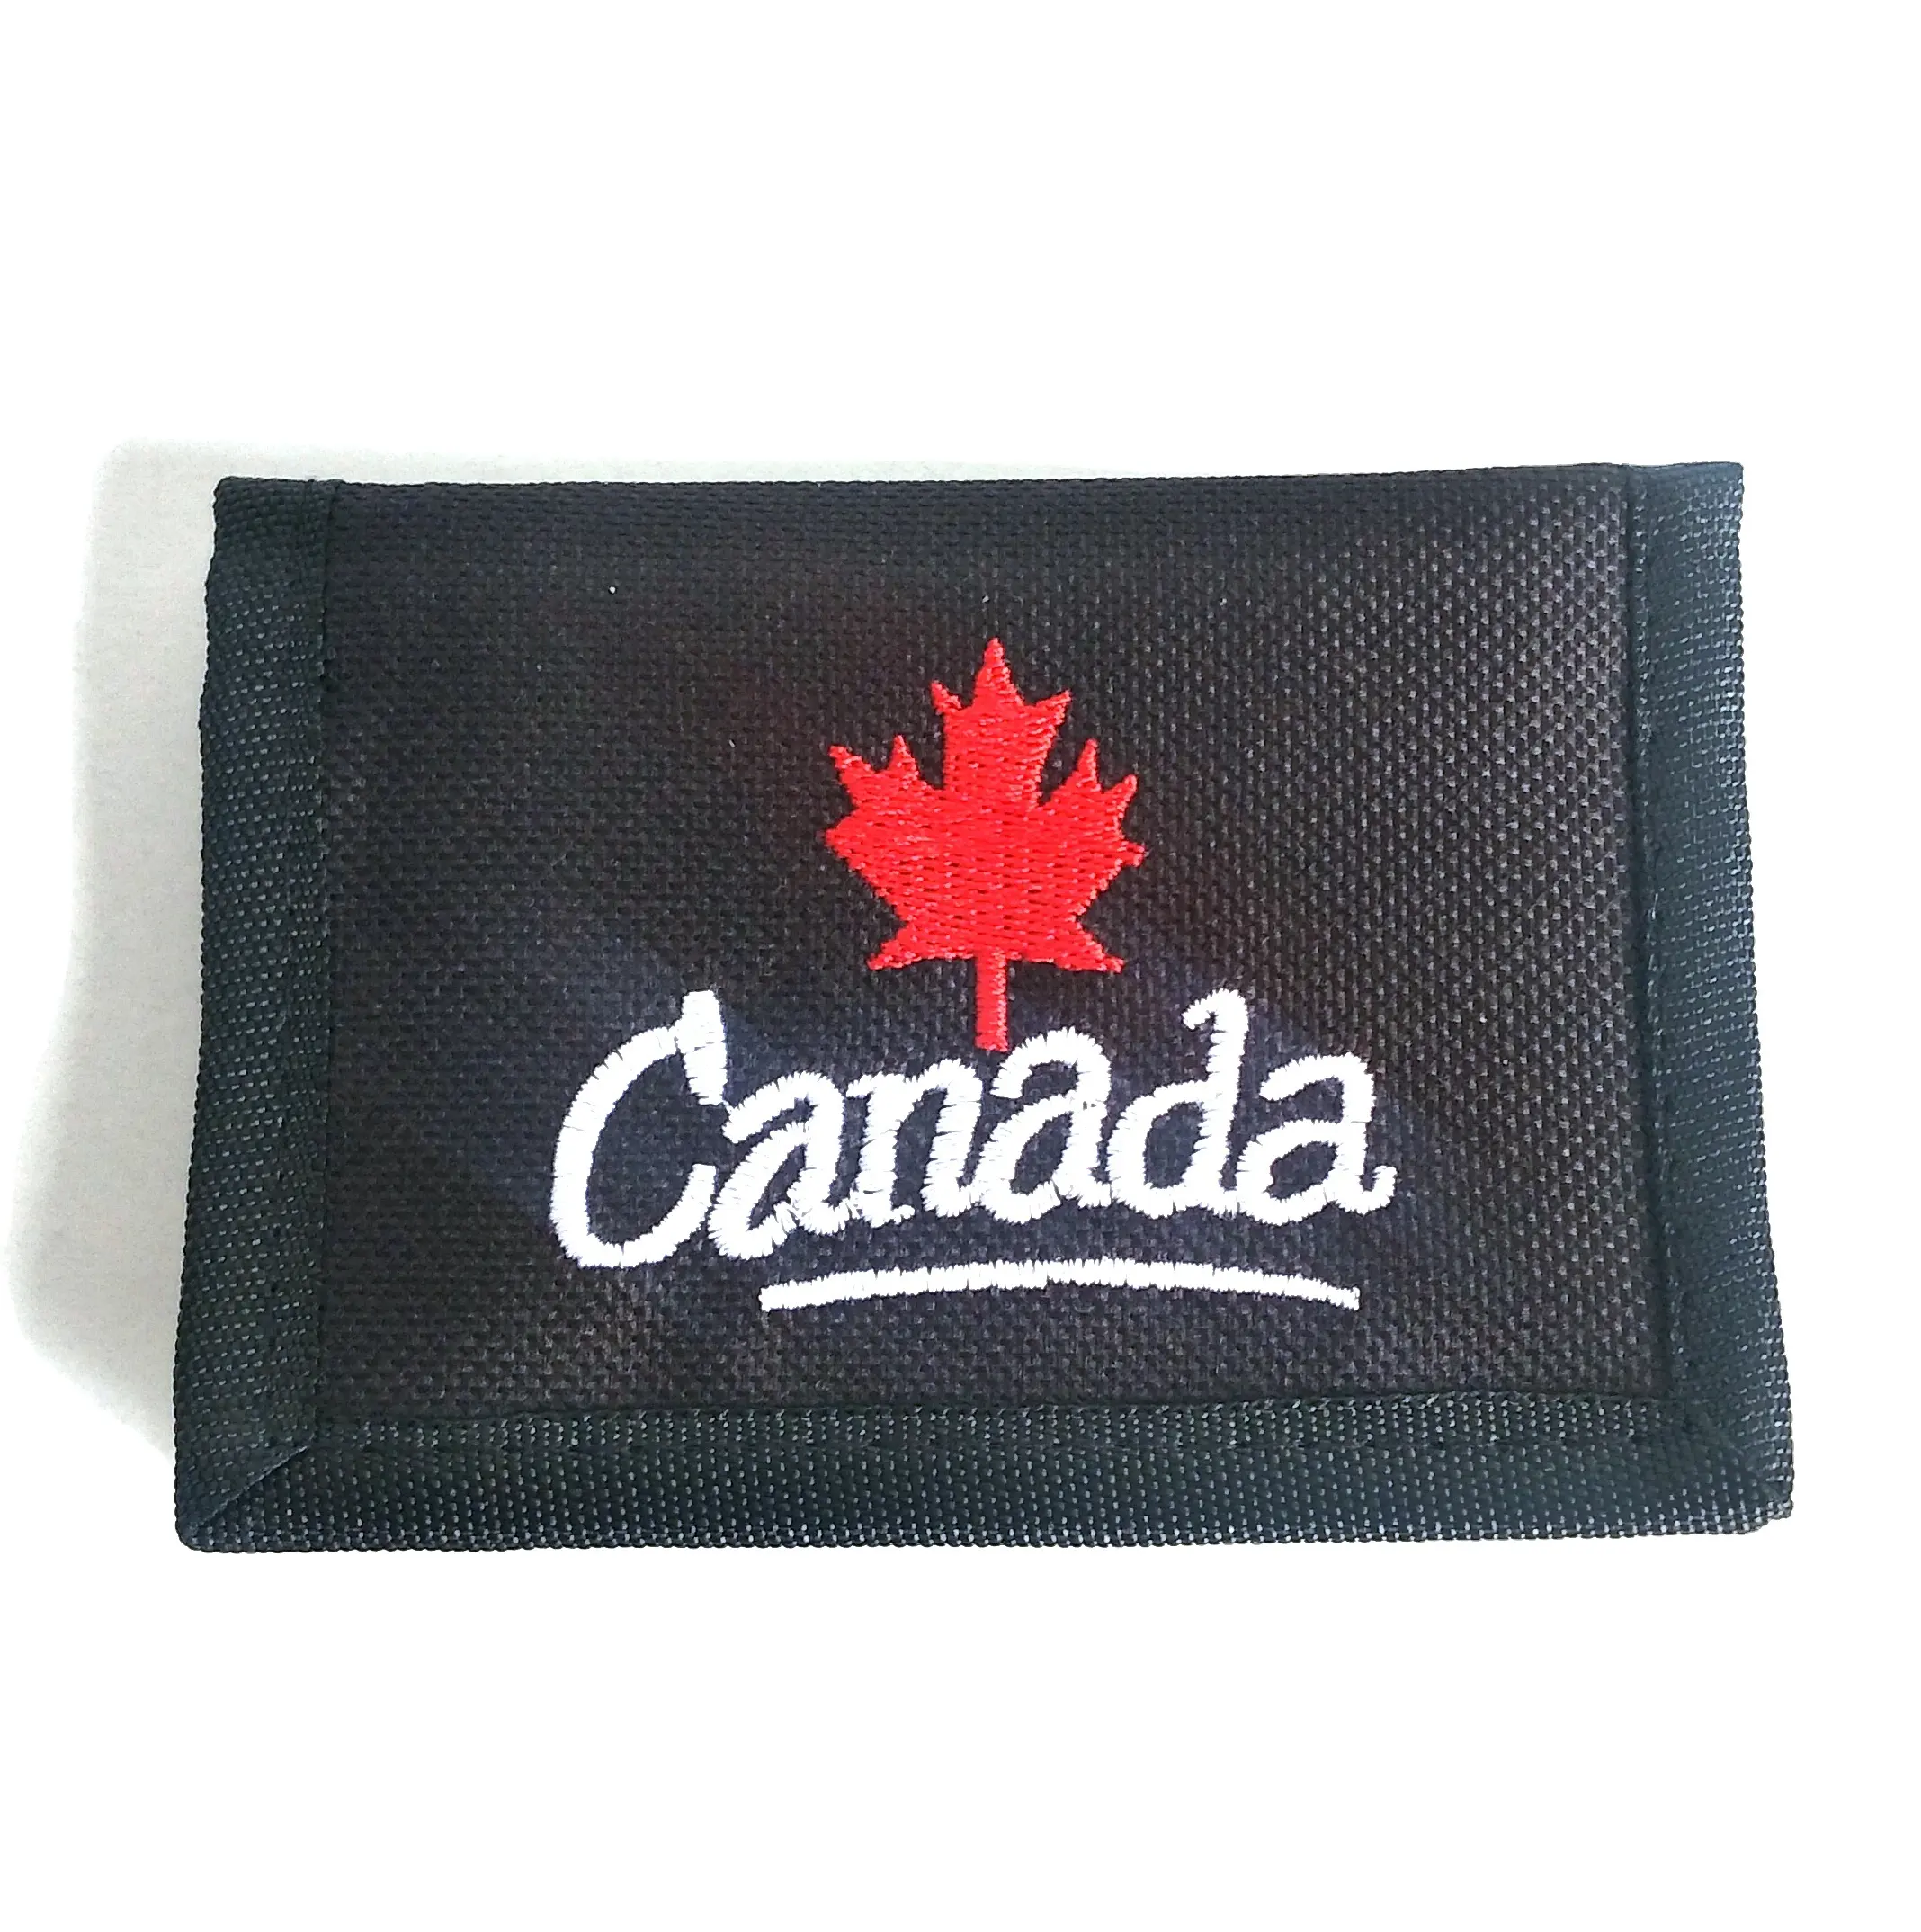 Новые модные высококачественные кошельки с вышивкой, кошельки с национальным флагом Канады